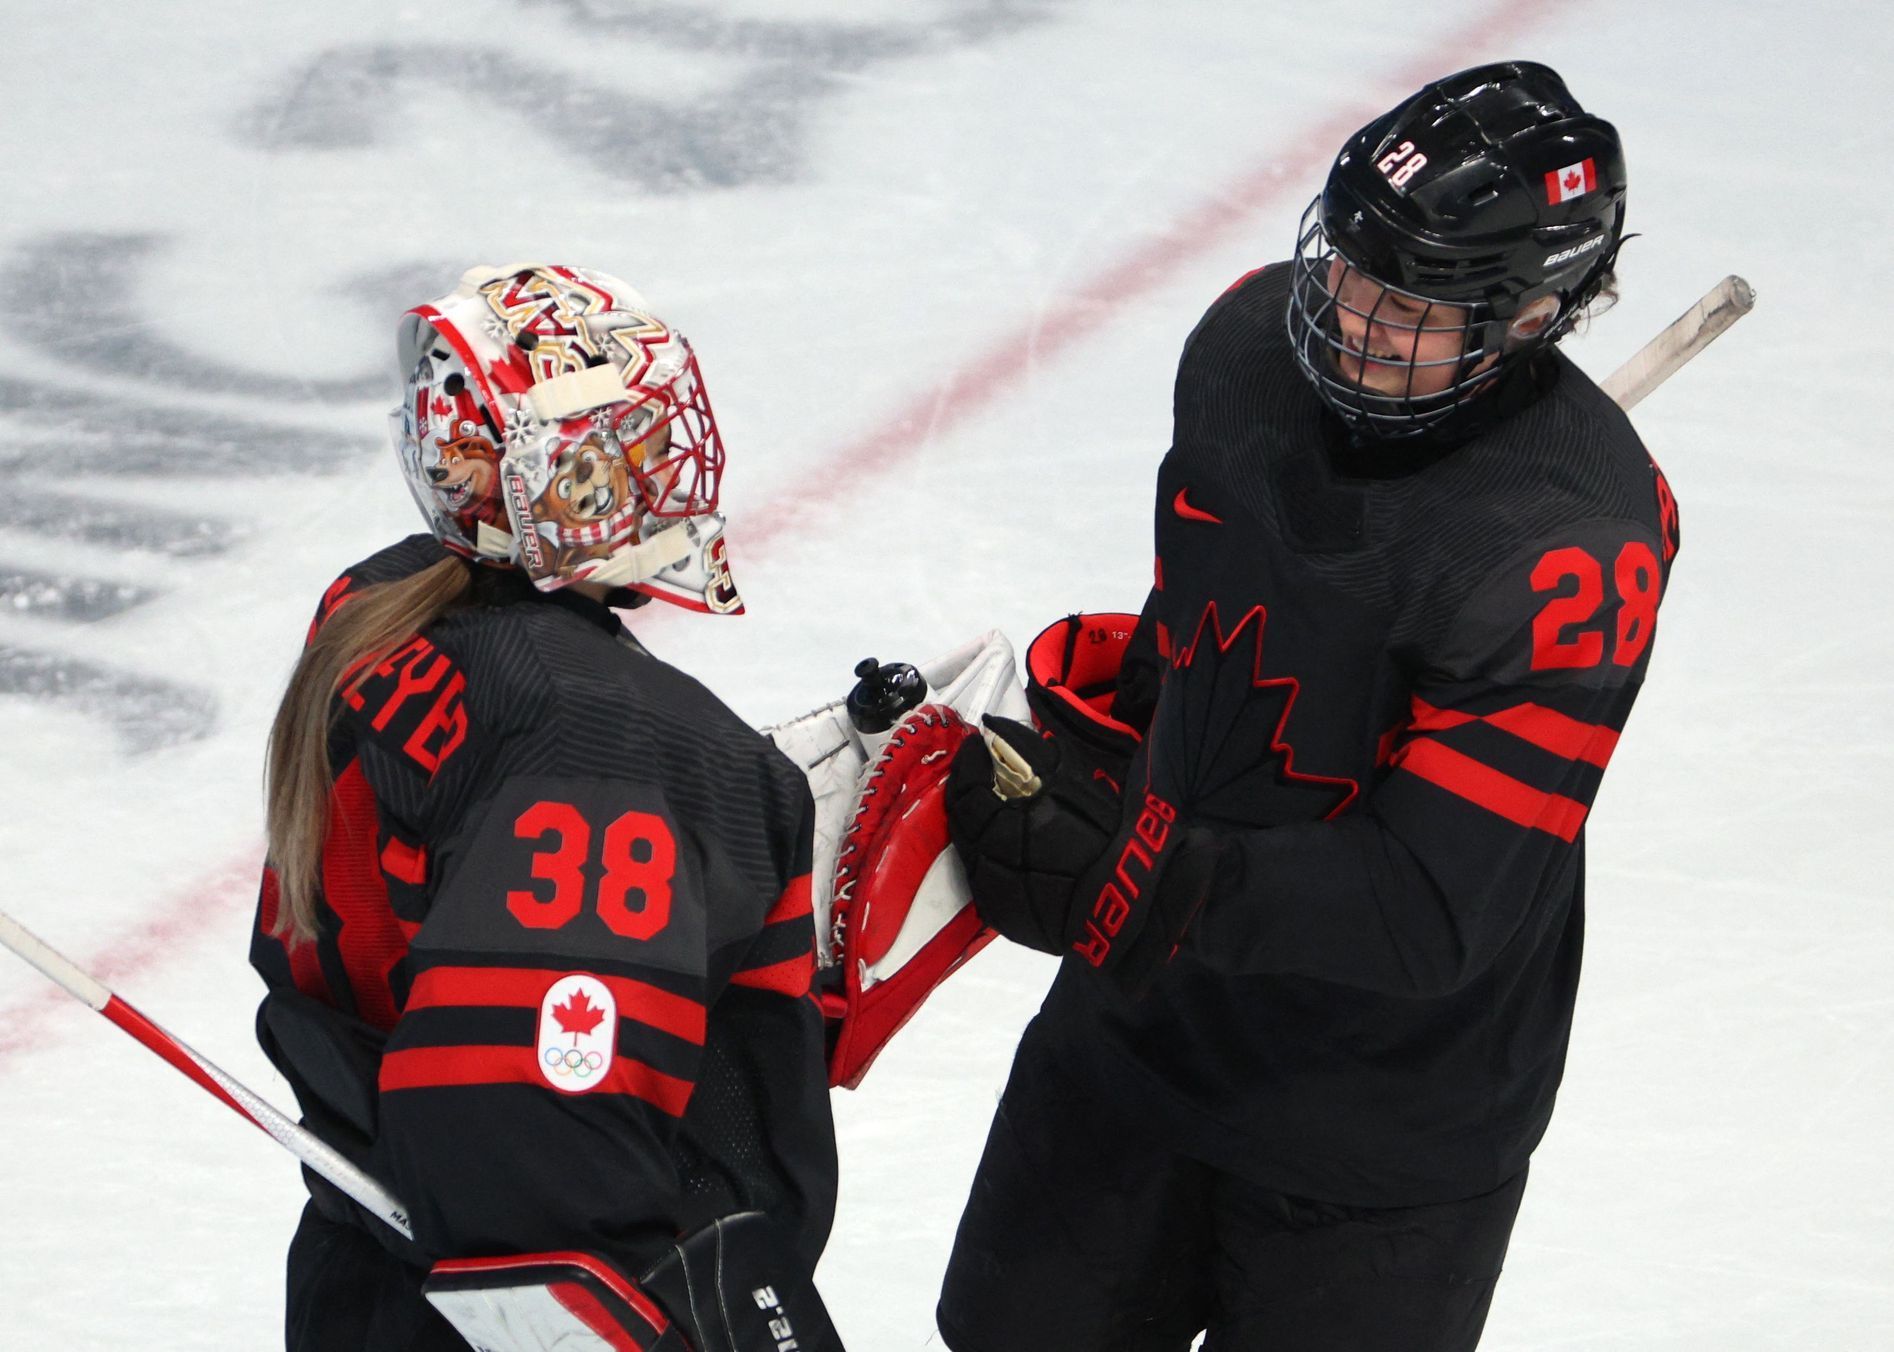 OH 2022, Peking, Kanada, ženský hokej